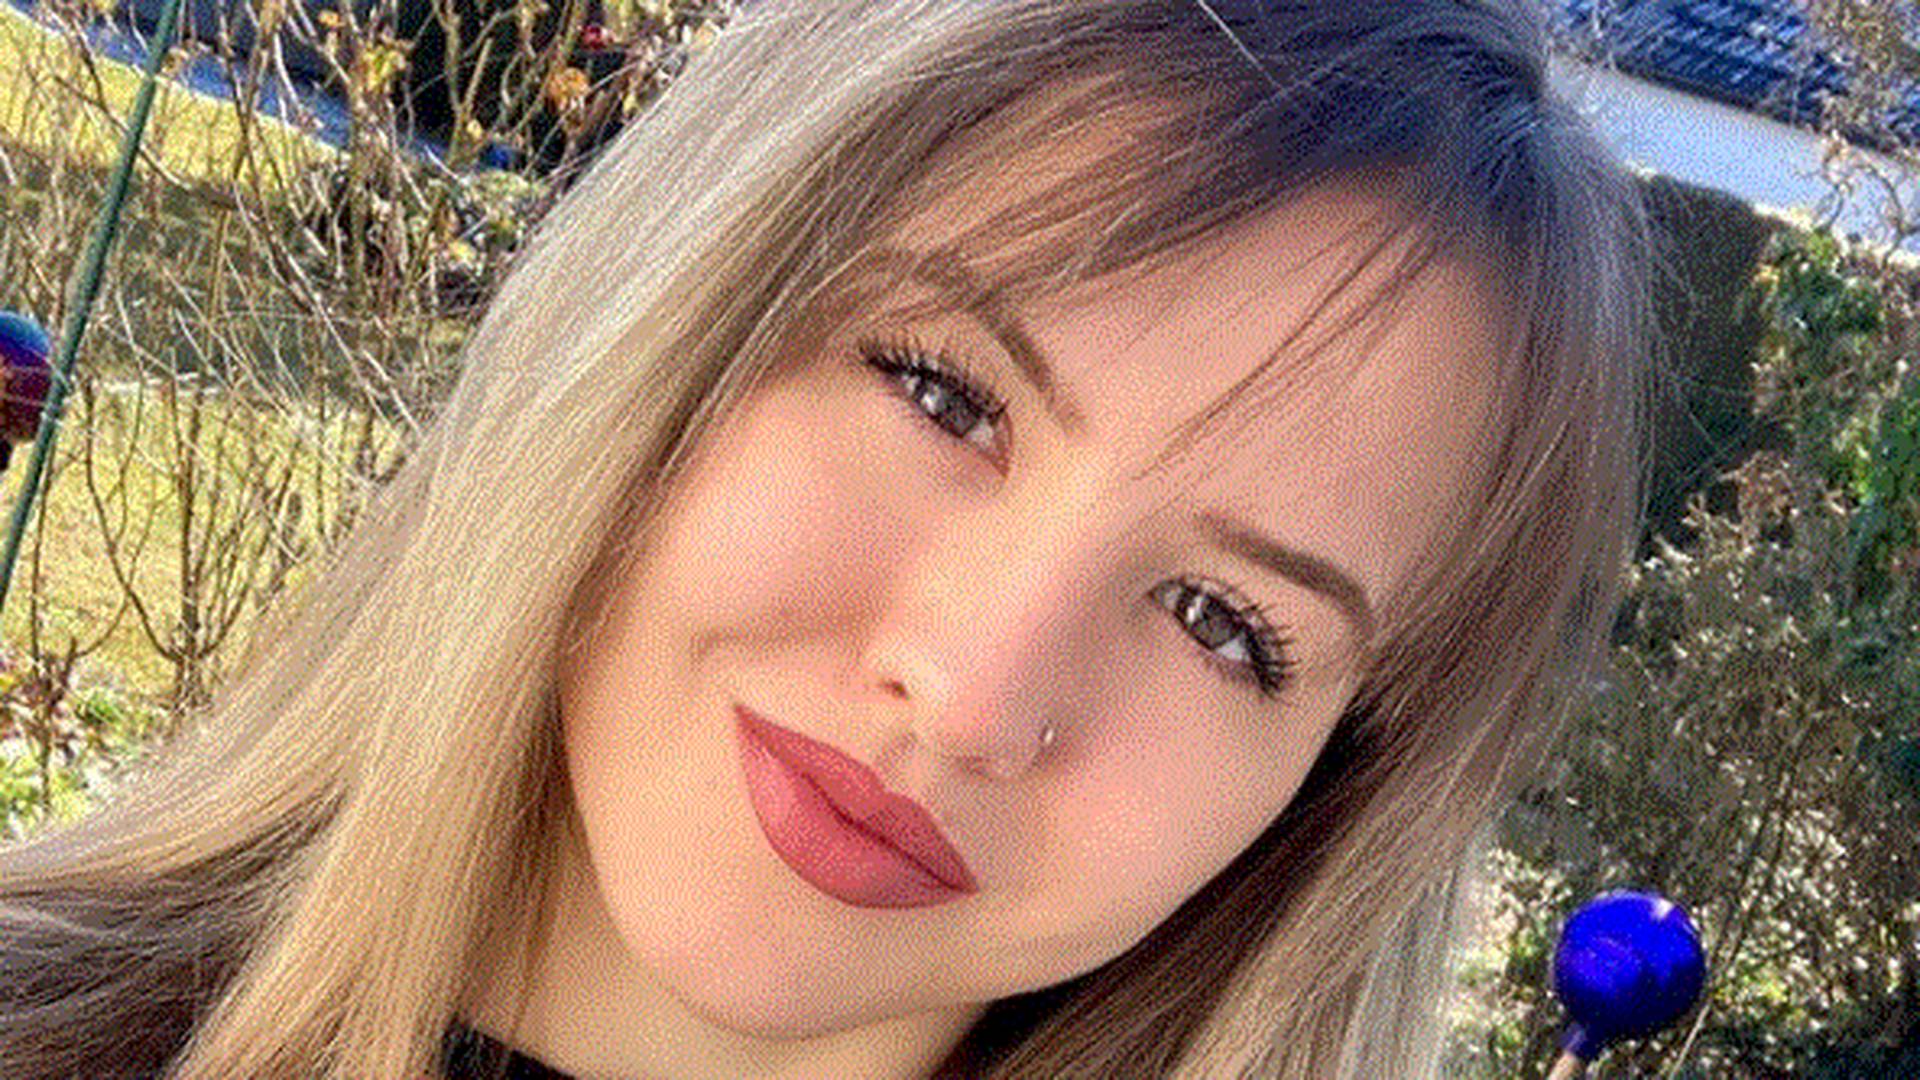 Űrlényfeje lett horrorsérülése után a 23 éves lánynak – Fotók